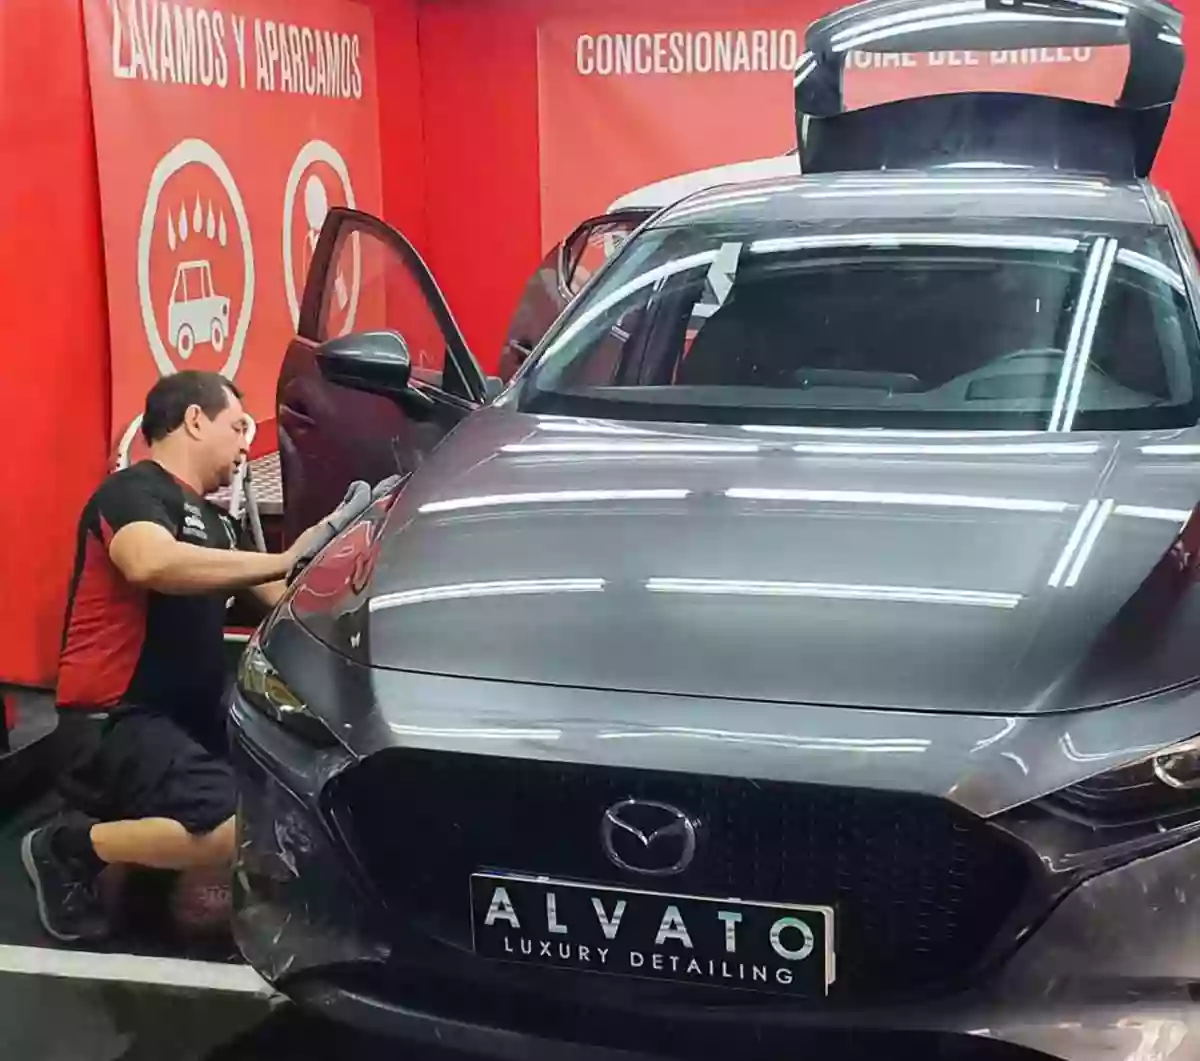 Alvato Car Wash AVENIDAS Palma Lavado de coches Luxury en El Corte Ingles ALVATOWASH